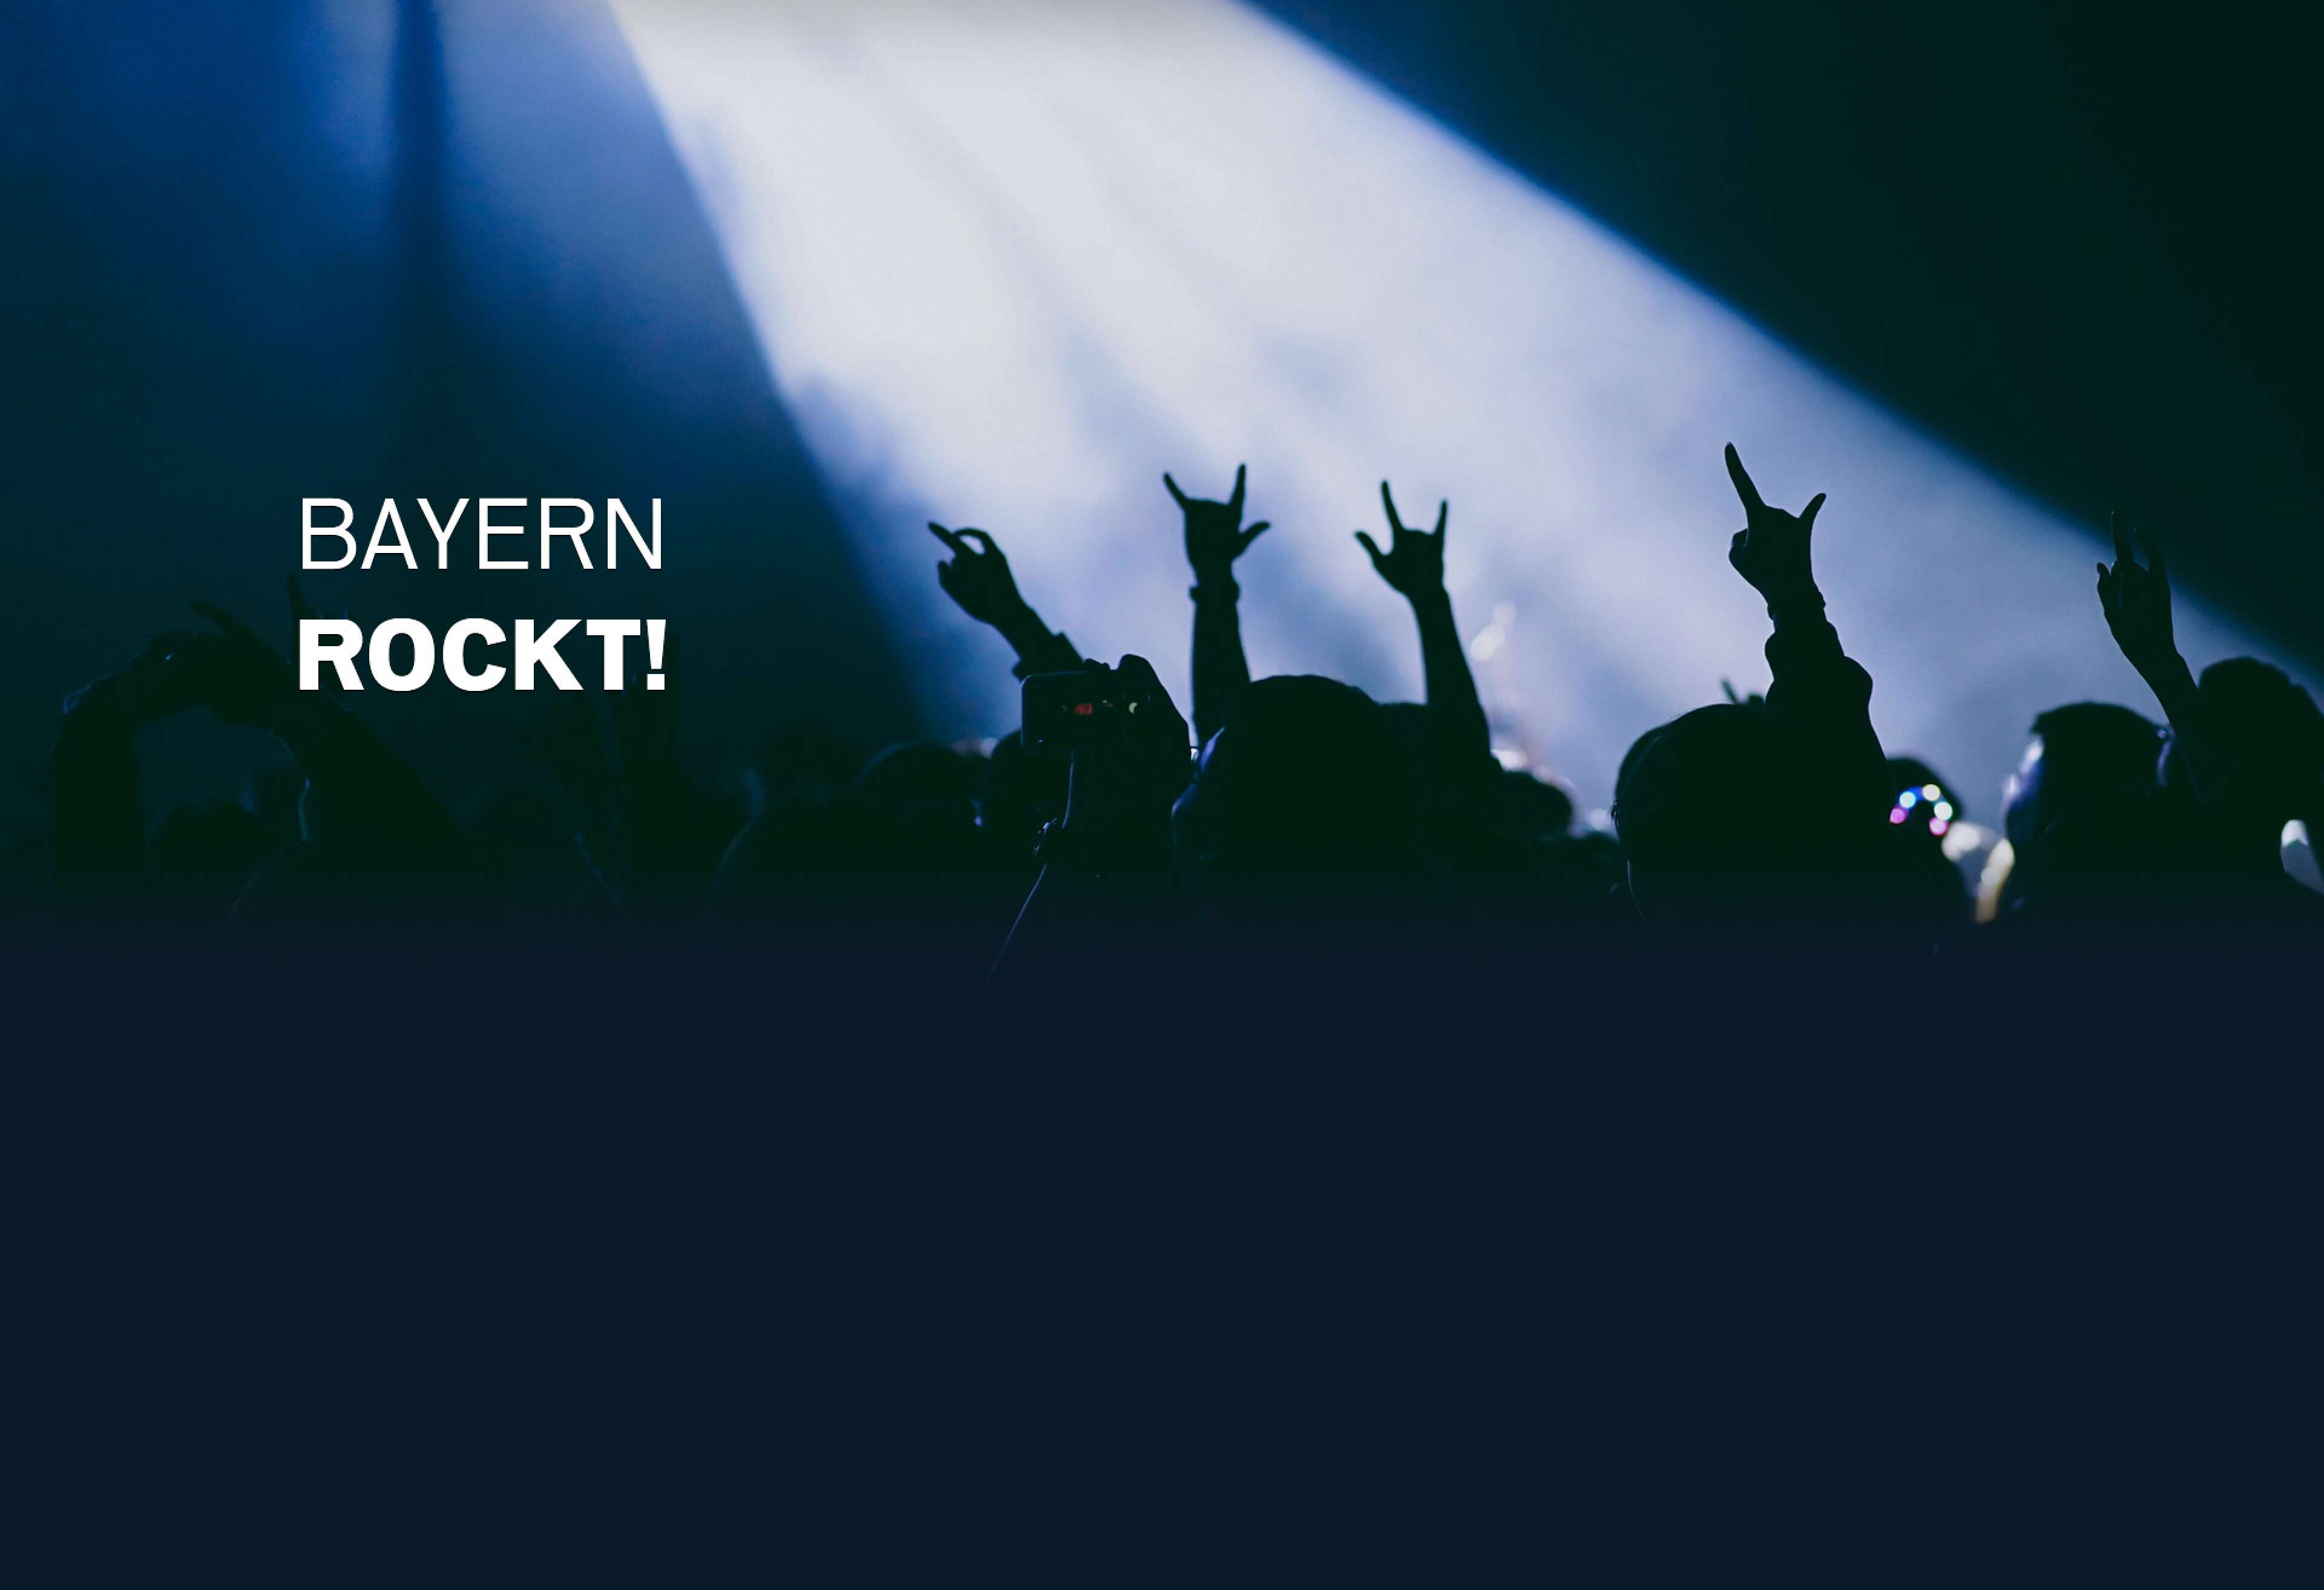 Konzertbesucher mit Pommesgabeln in der Luft, Text "Bayern rockt!"